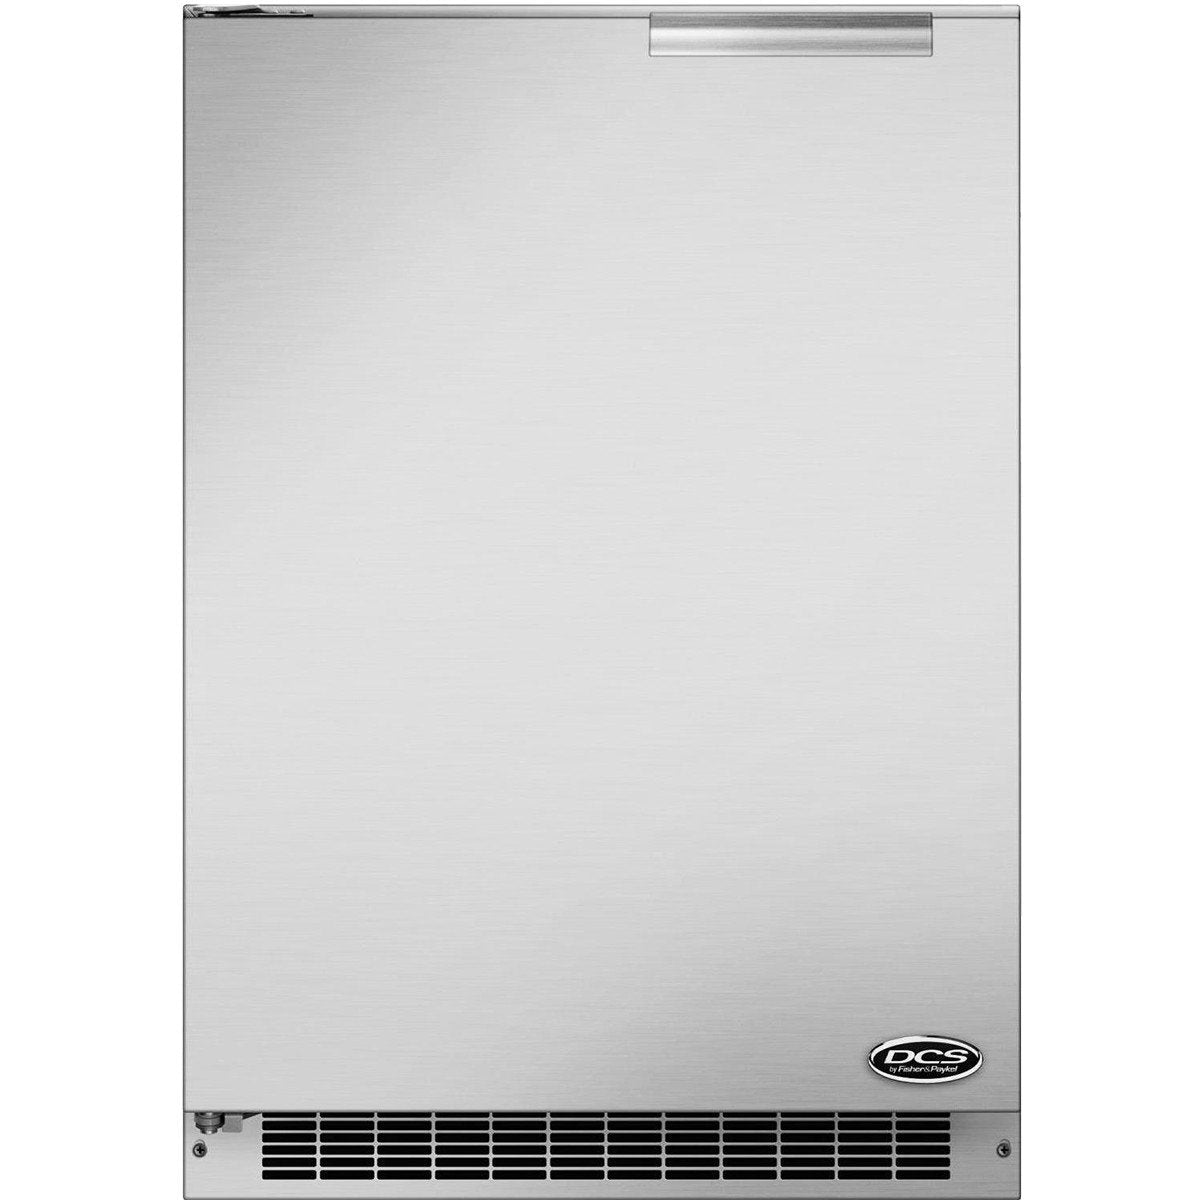 DCS 24" Outdoor Refrigerator - Left Hinge